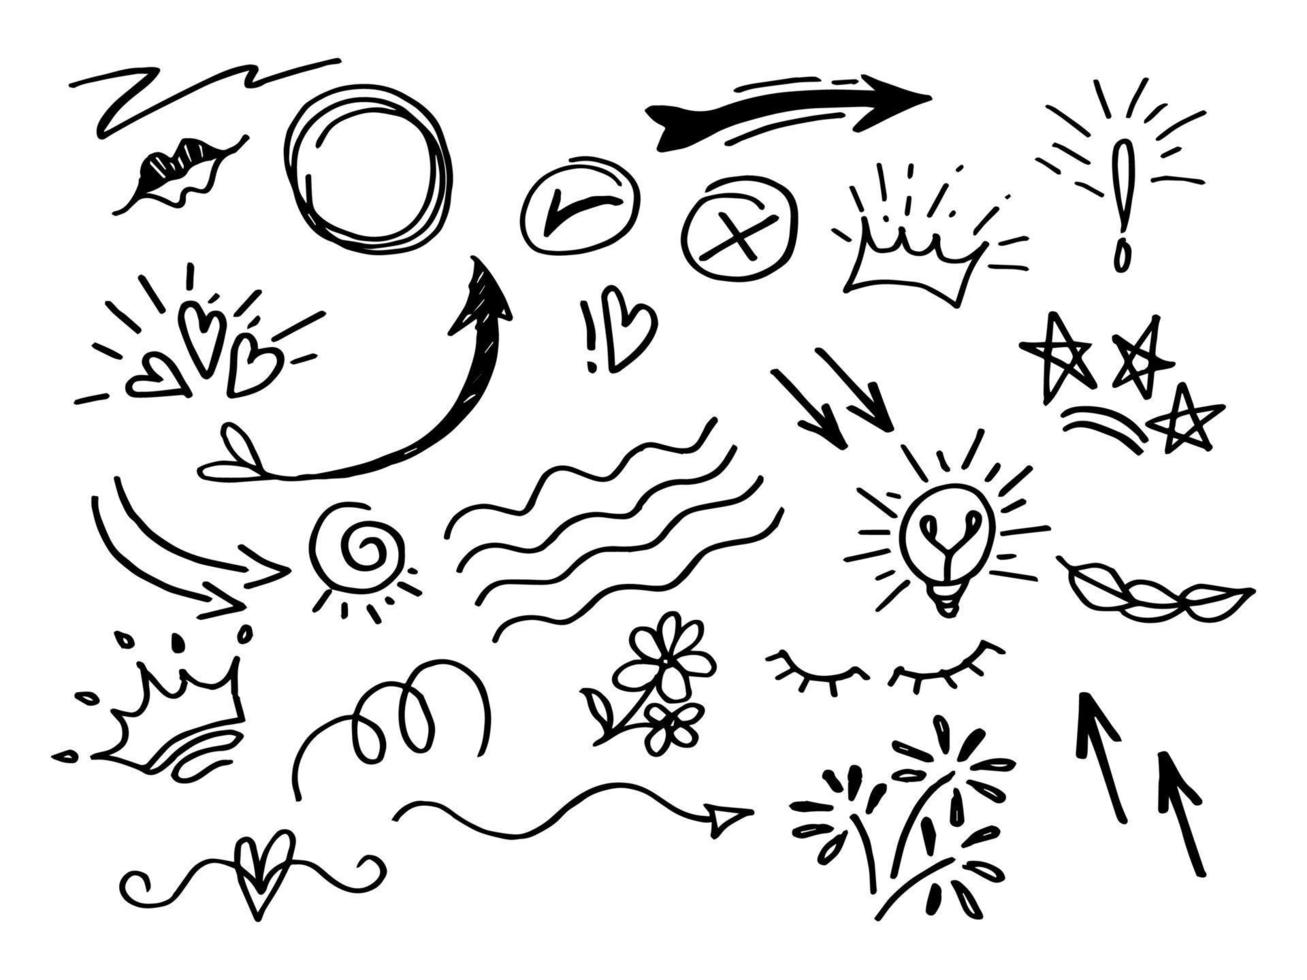 conjunto de elementos de diseño dibujado a mano. swishes, swoops, remolino, flecha, corazón, amor, corona, flor, texto resaltado y énfasis vector